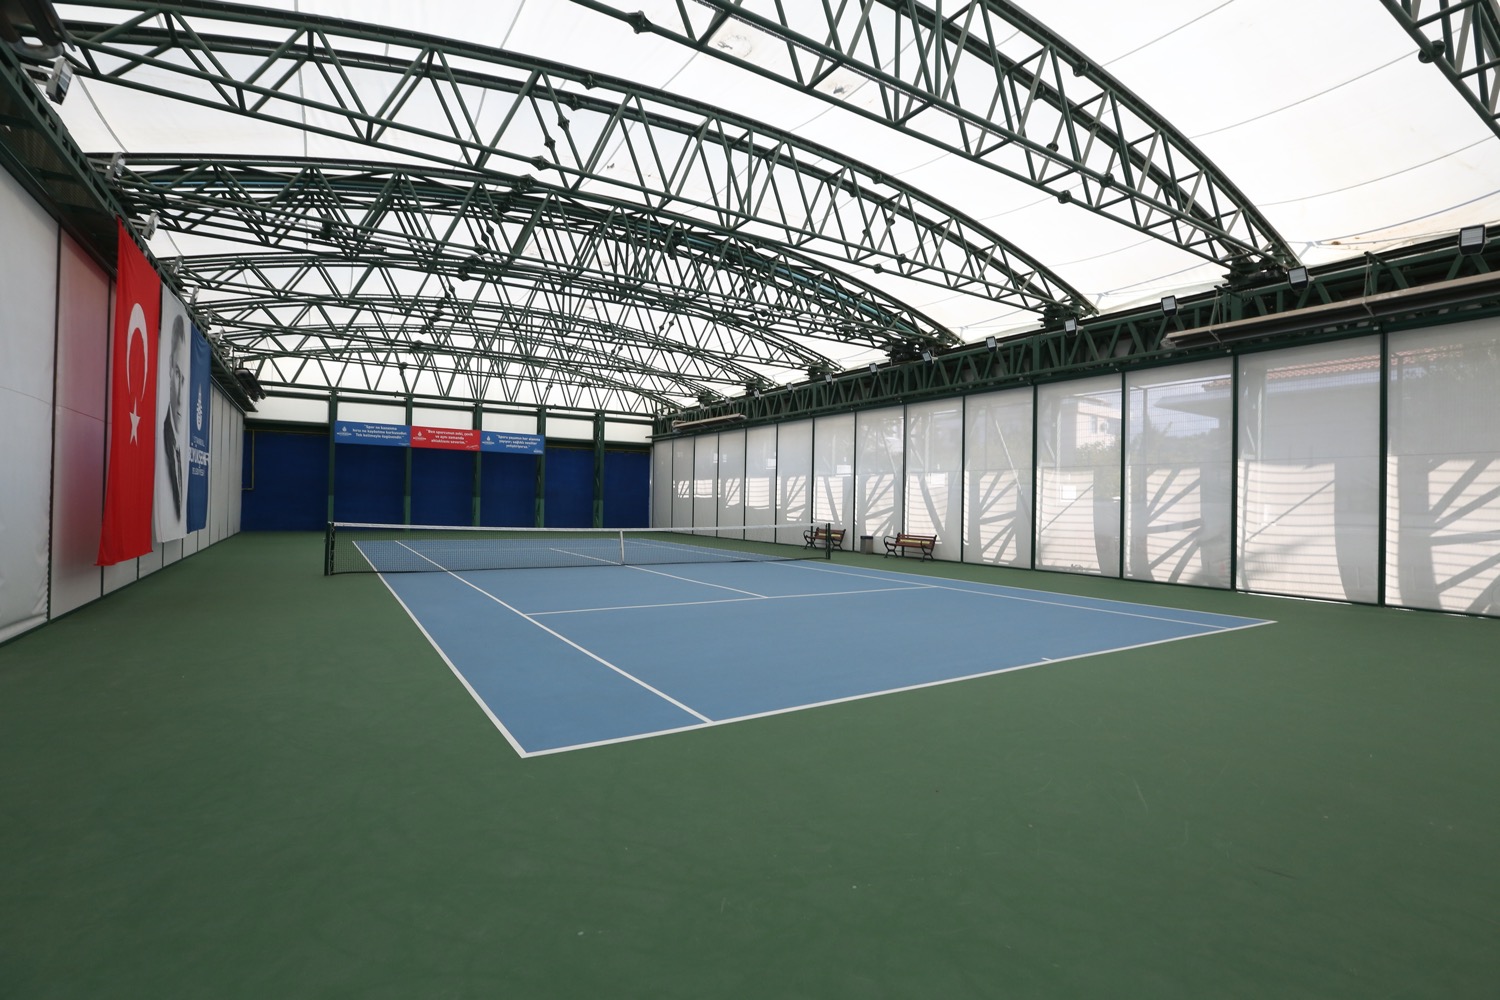 Ücretsiz Tenis Kortu İstanbul